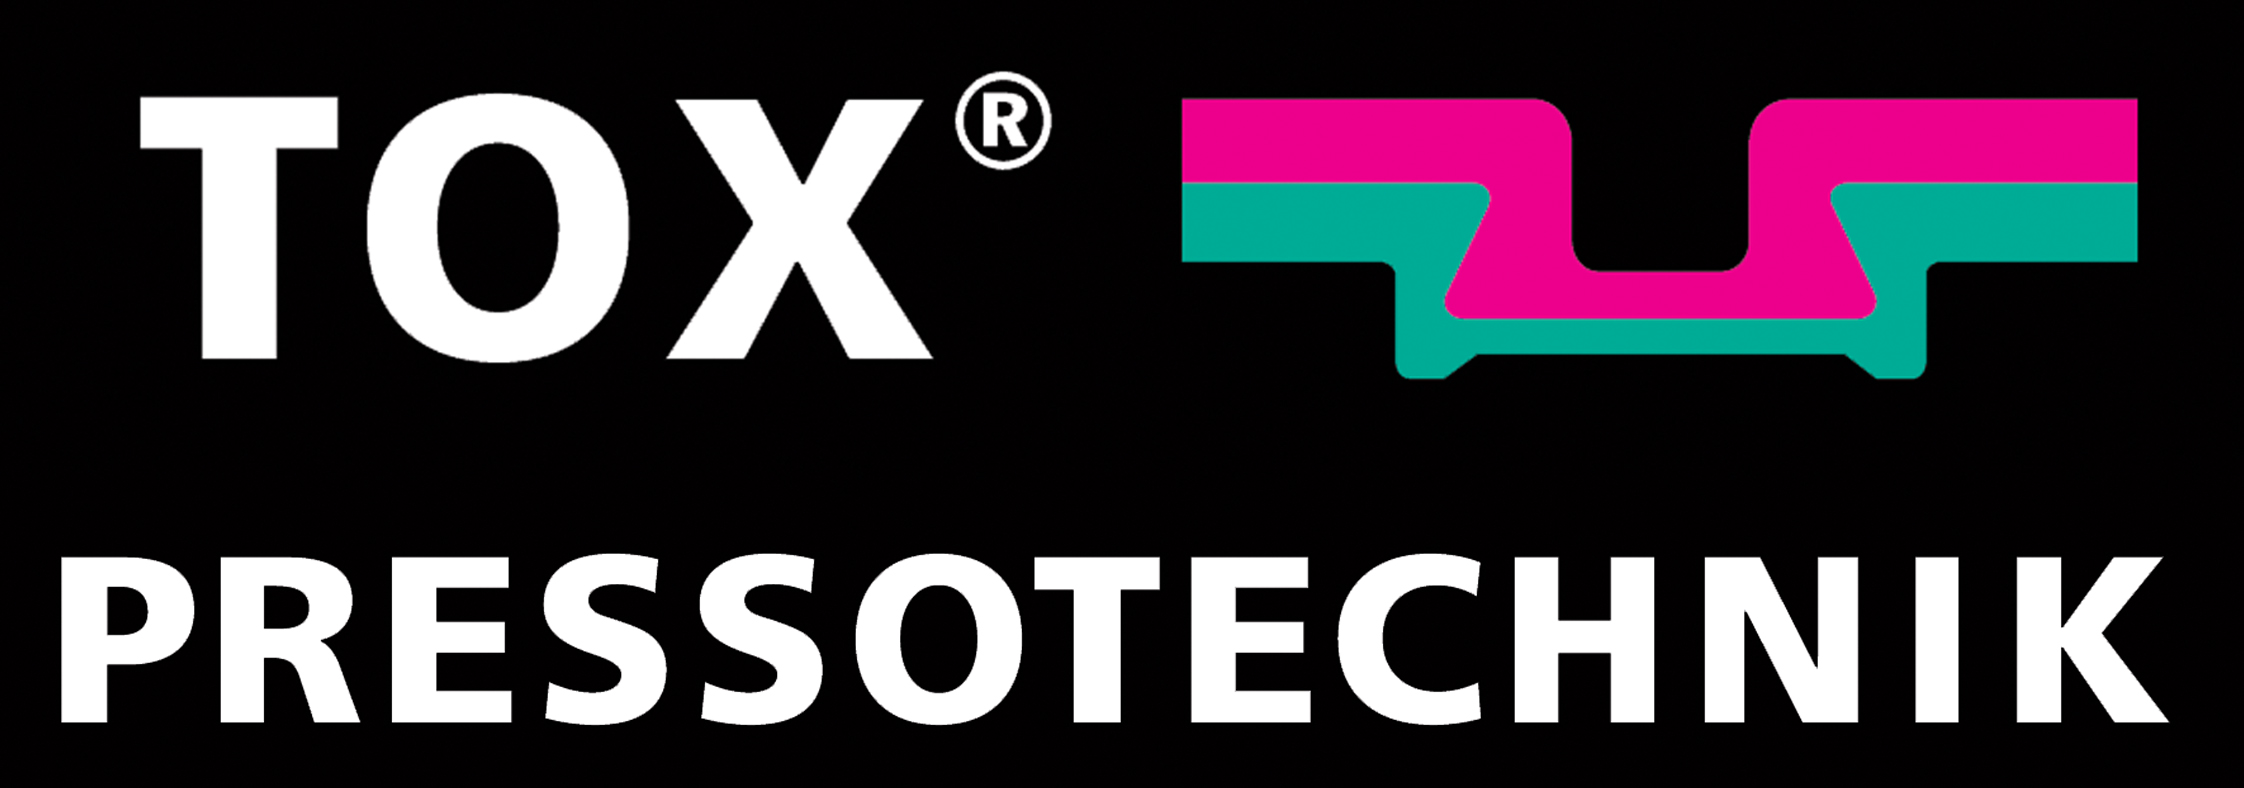 TOX® PRESSOTECHNIK logo.